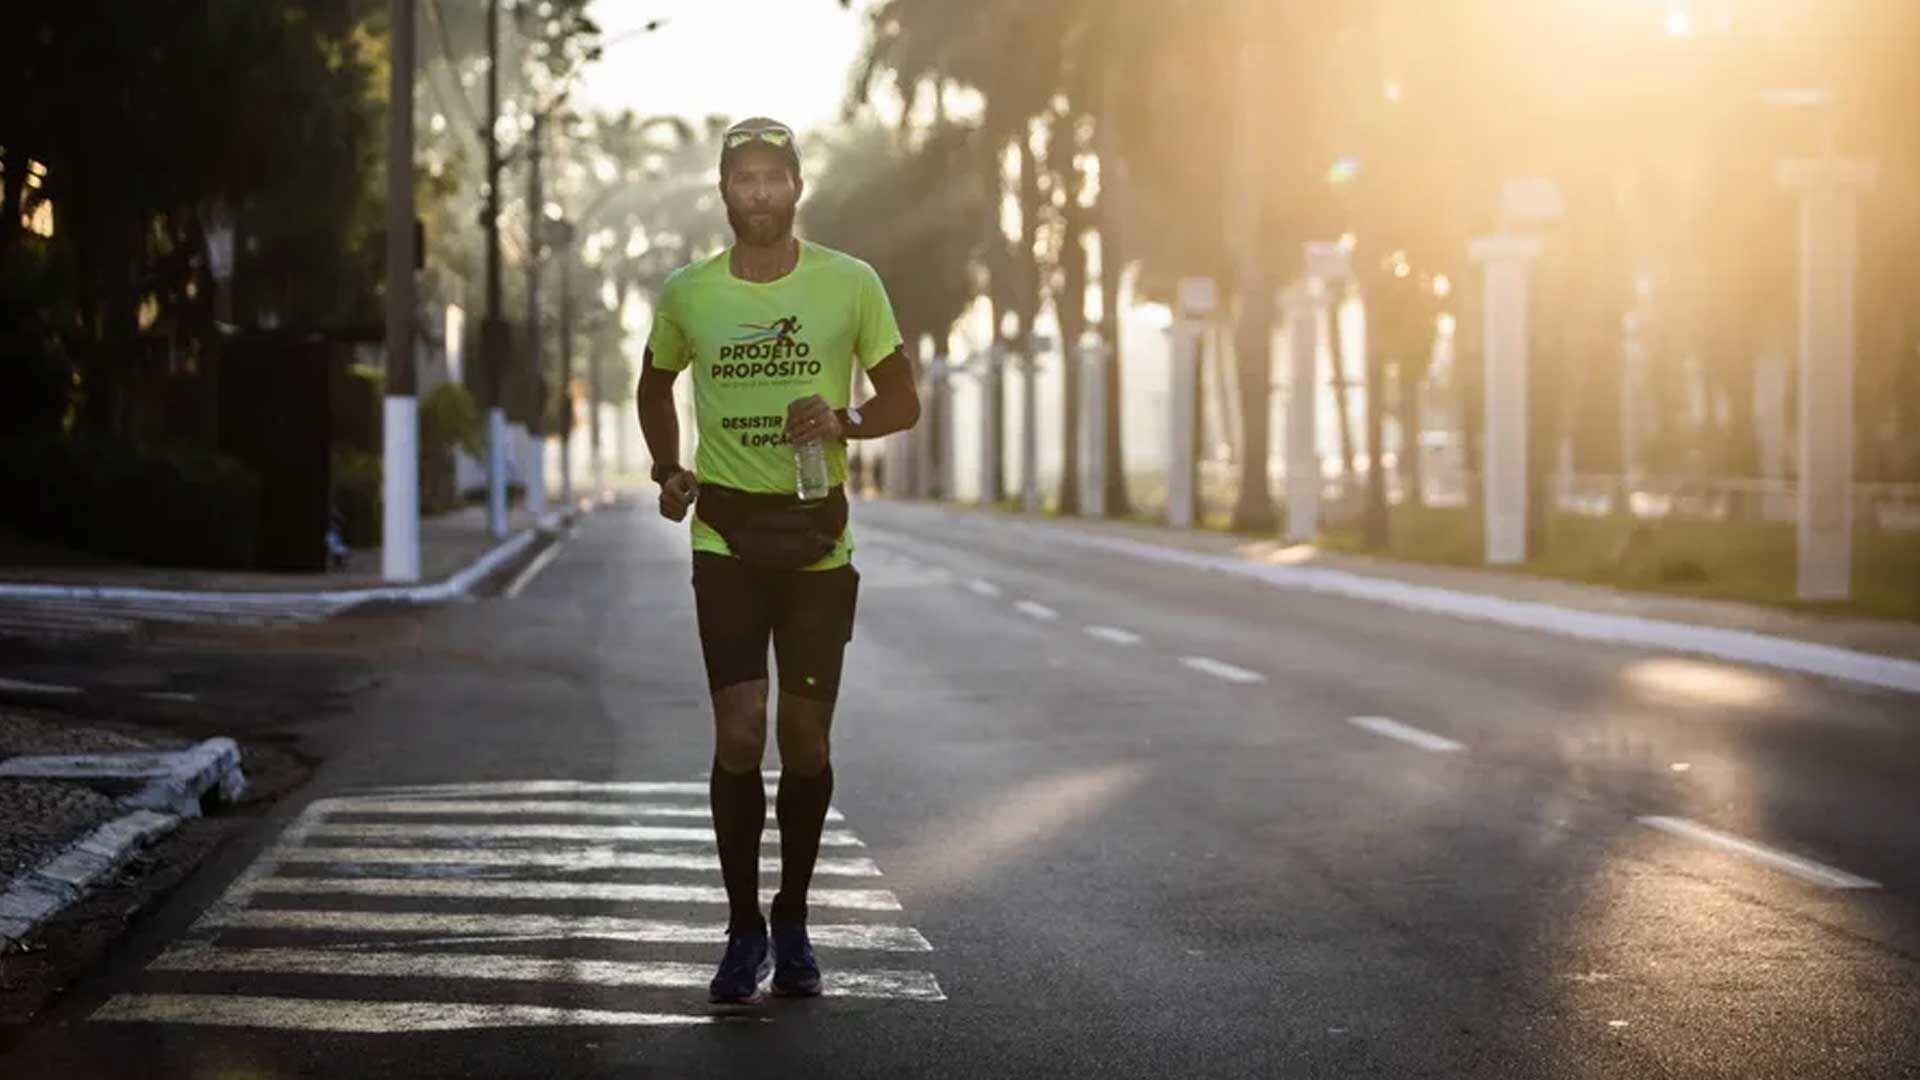 Hugo Farias, de 44 años, rompe el récord mundial al correr 366 maratones en un año y un día. Este logro ha sido incluido en el Guinness World Records tras ocho meses de análisis.